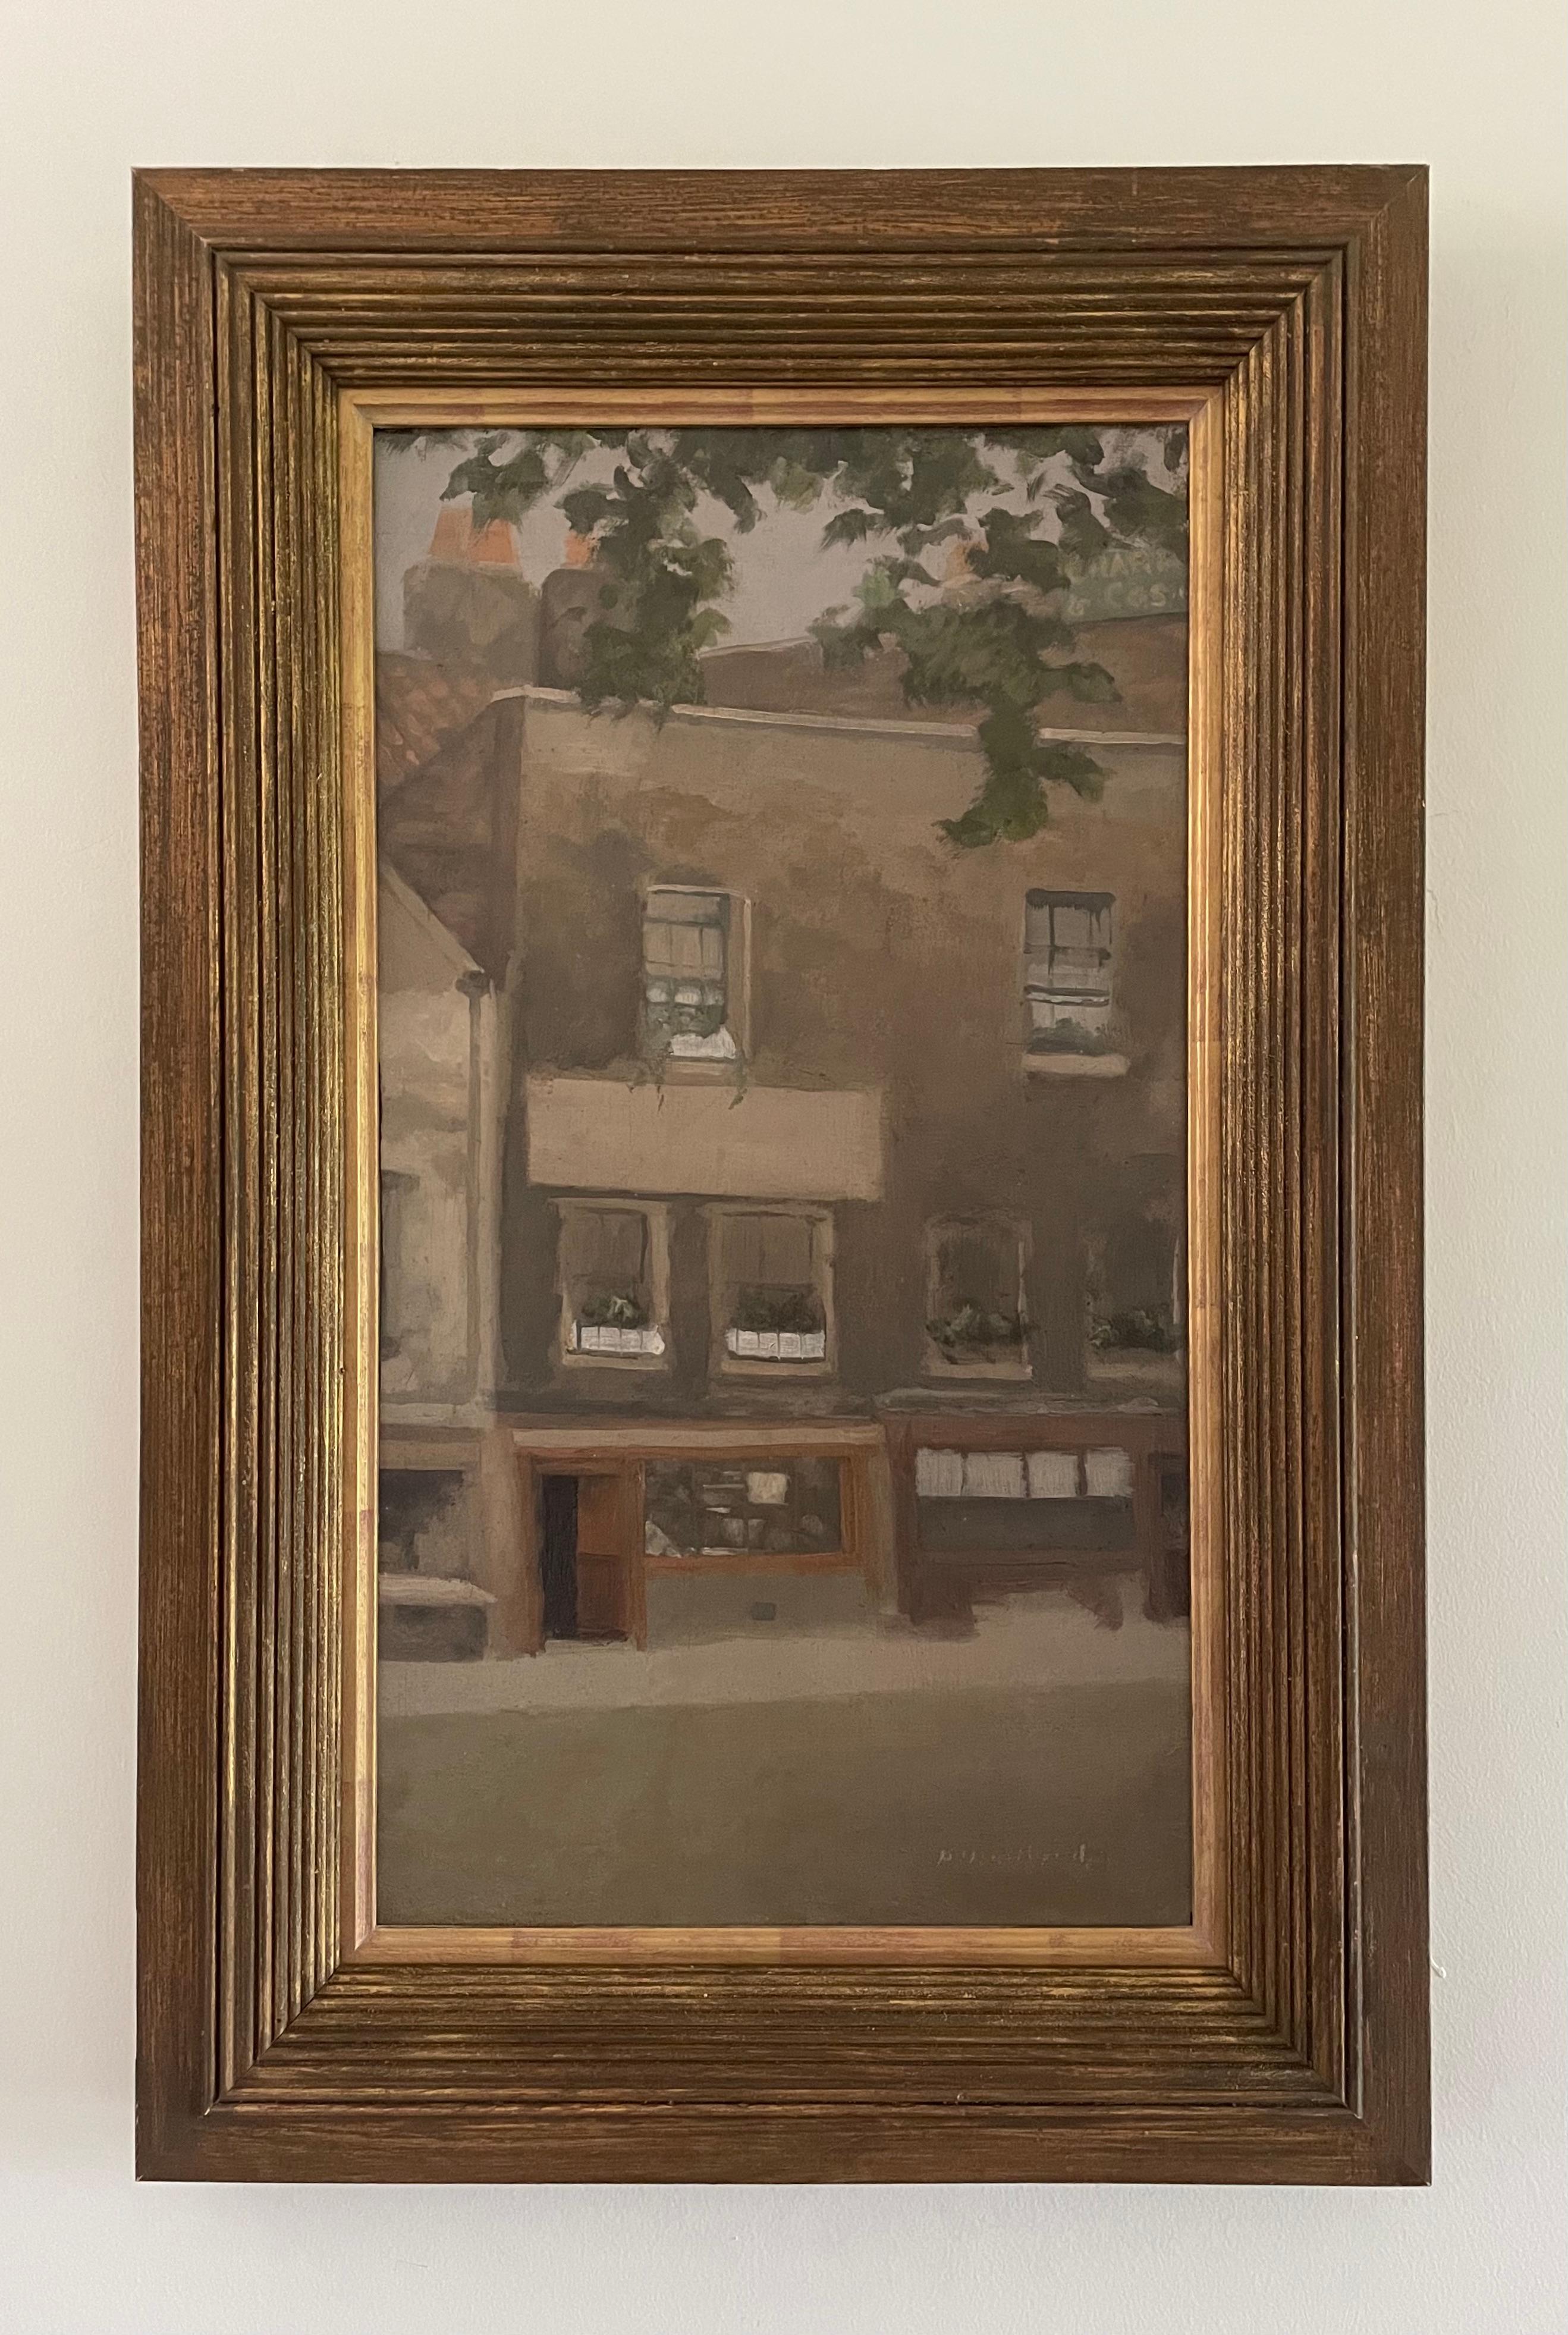 Paul Maitland - Peinture impressionniste britannique du début du 20e siècle représentant le vieux Chelsea - Painting de Paul Fordyce Maitland